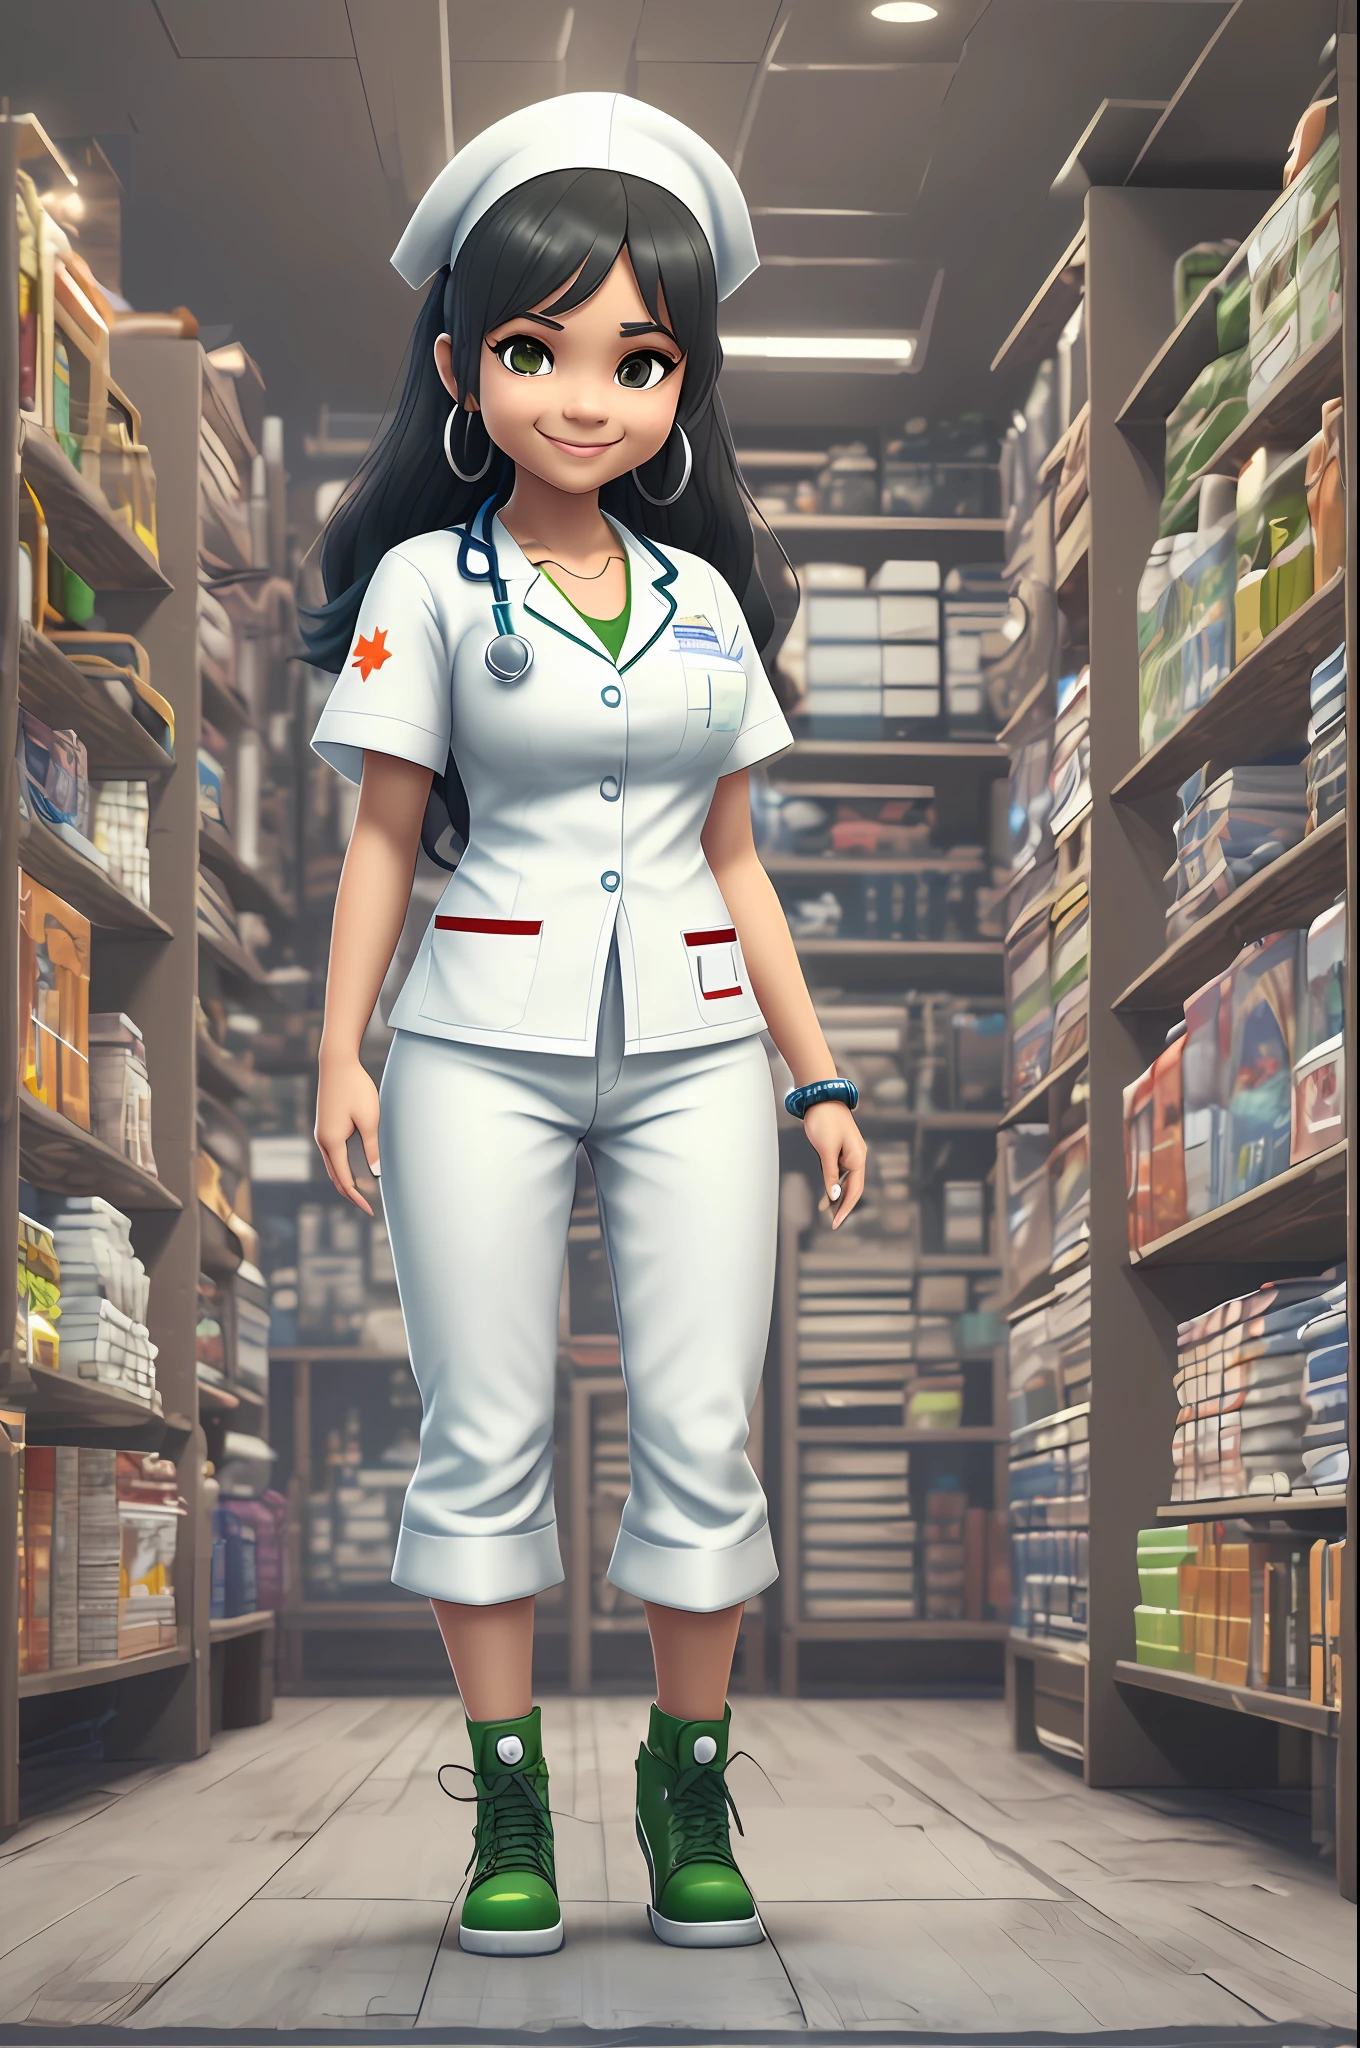 Una imagen en 3D de una enfermera mulata de cuerpo entero., de pie, con pantalones blancos linda cara sonriente, Ojos cafés, pelo largo y negro, vistiendo un uniforme de enfermera blanco con pequeños detalles en verde y azul al estilo chibi y Disney, sin antecedentes, detallado, Ultra Alta Definición, 8k, al estilo de Quixel Megascans, Tienda de escaneo 3D y juegos épicos